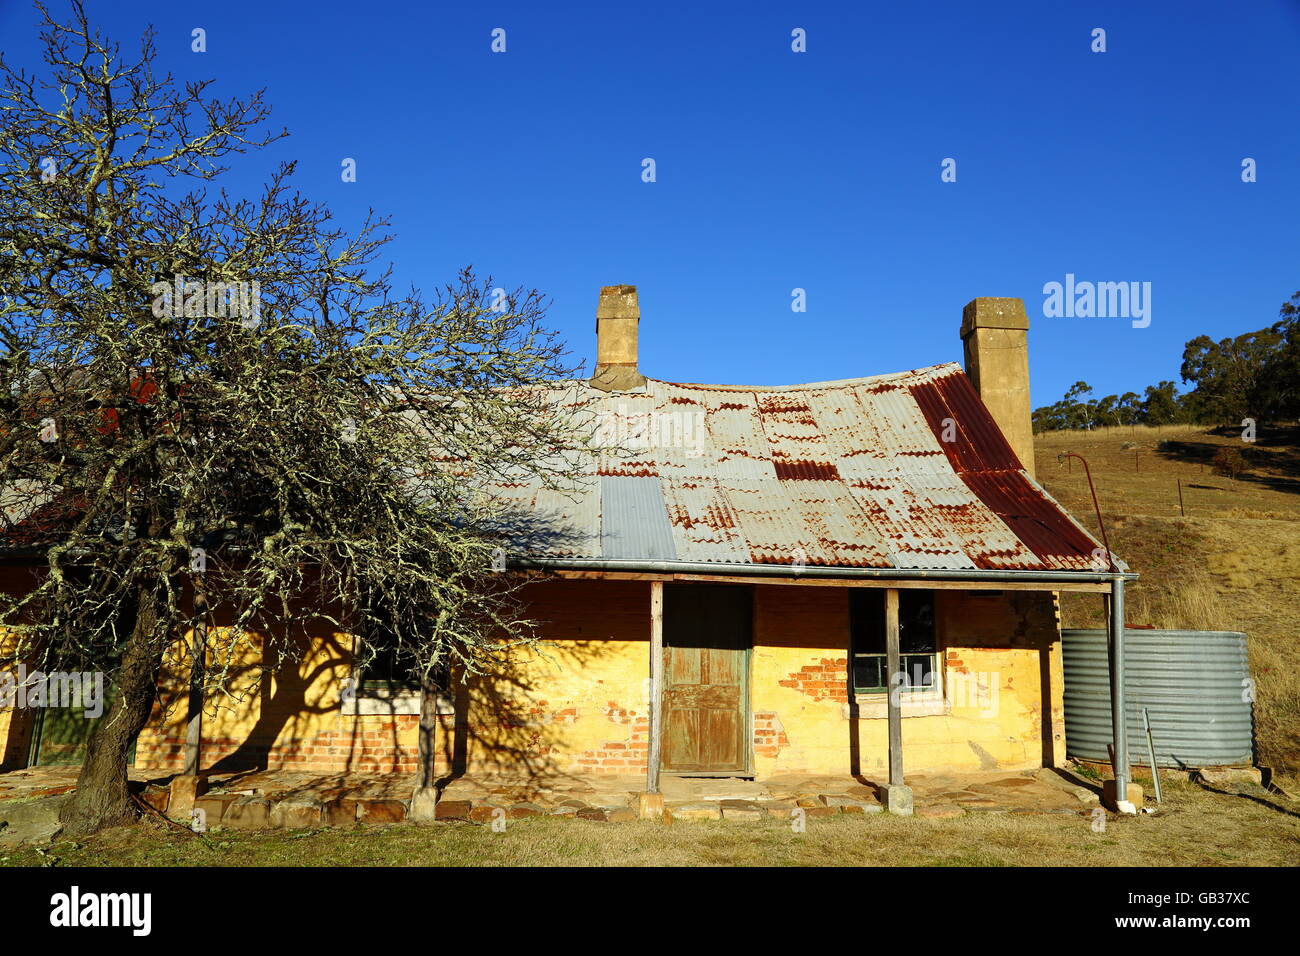 Hartley Historic Village gesetzt in den westlichen Rand der wunderschönen Blue Mountains in der Nähe von Lithgow, NSW, Australien. Stockfoto